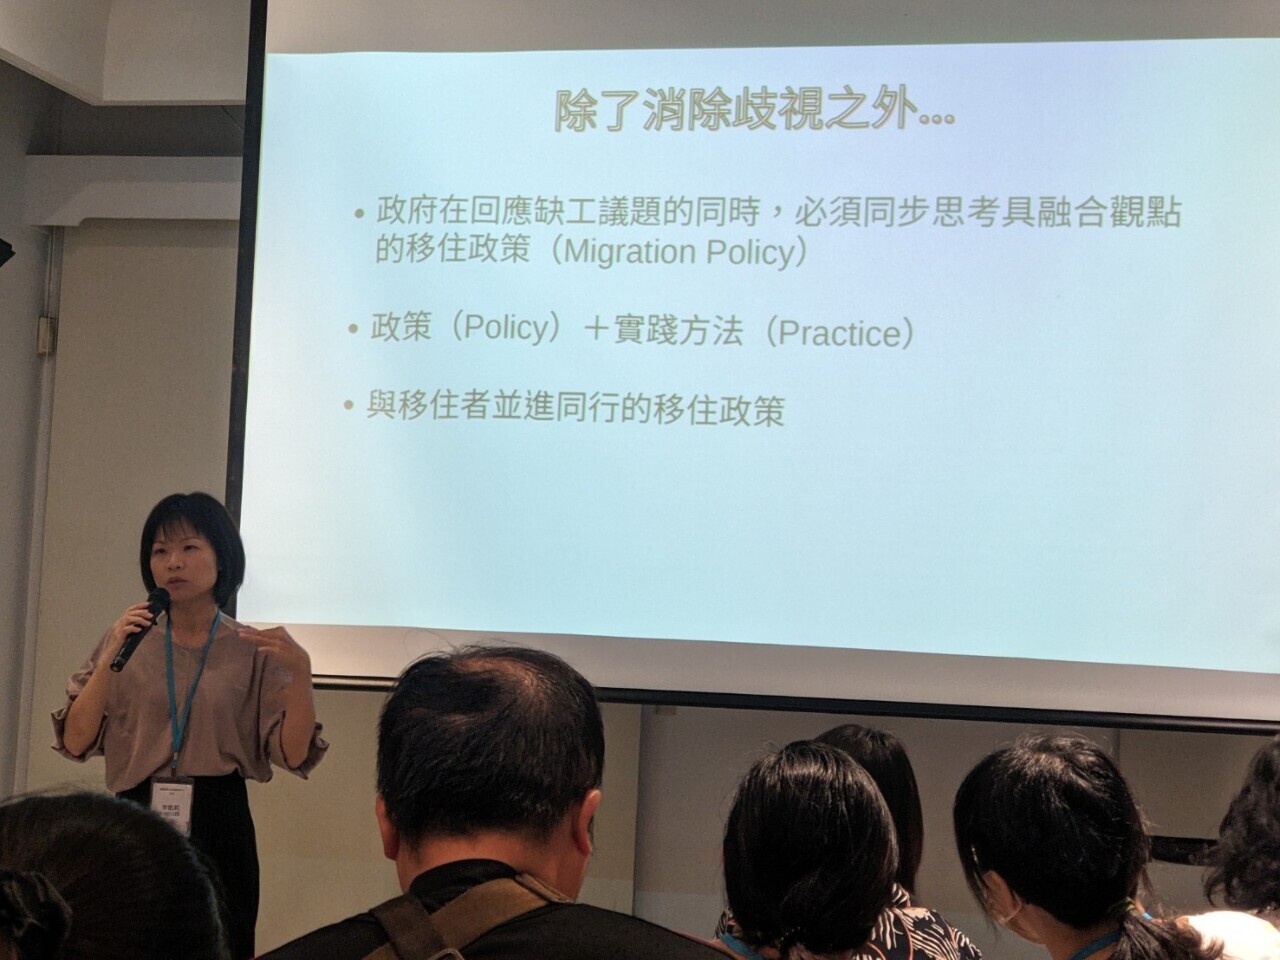 Đoàn thể dân sự, đại diện lao động di trú tại Đài Loan công bố báo cáo “Công ước quốc tế về xóa bỏ mọi hình thức phân biệt chủng tộc”